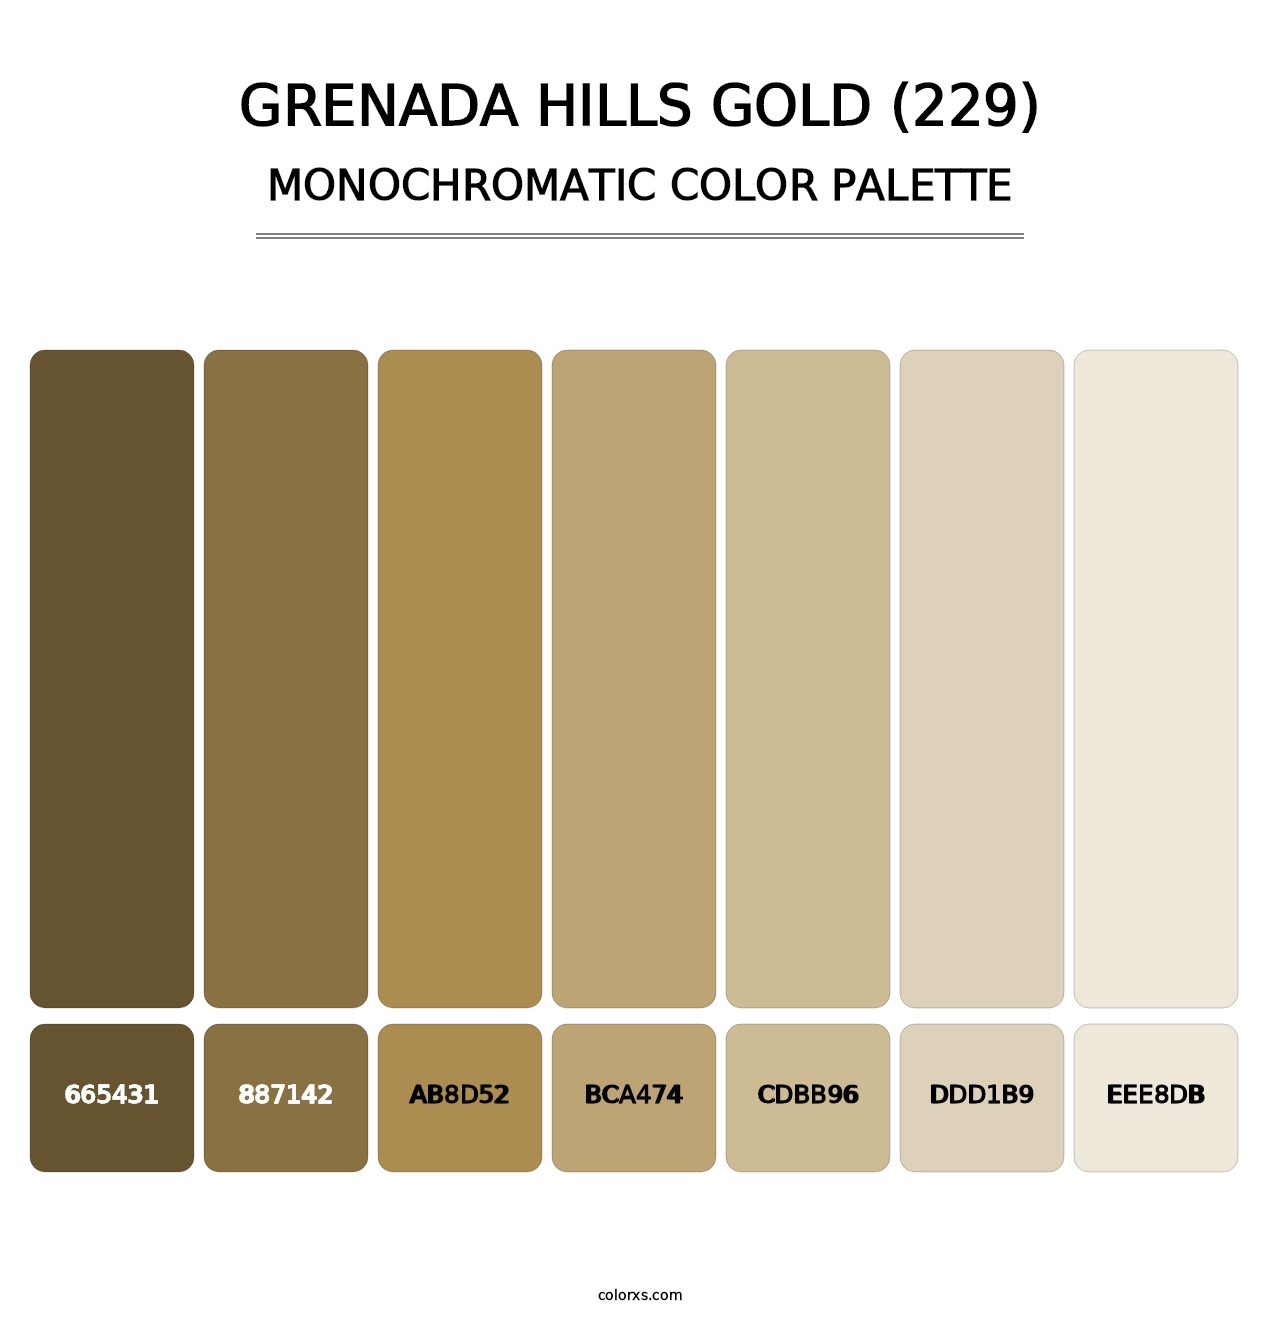 Grenada Hills Gold (229) - Monochromatic Color Palette